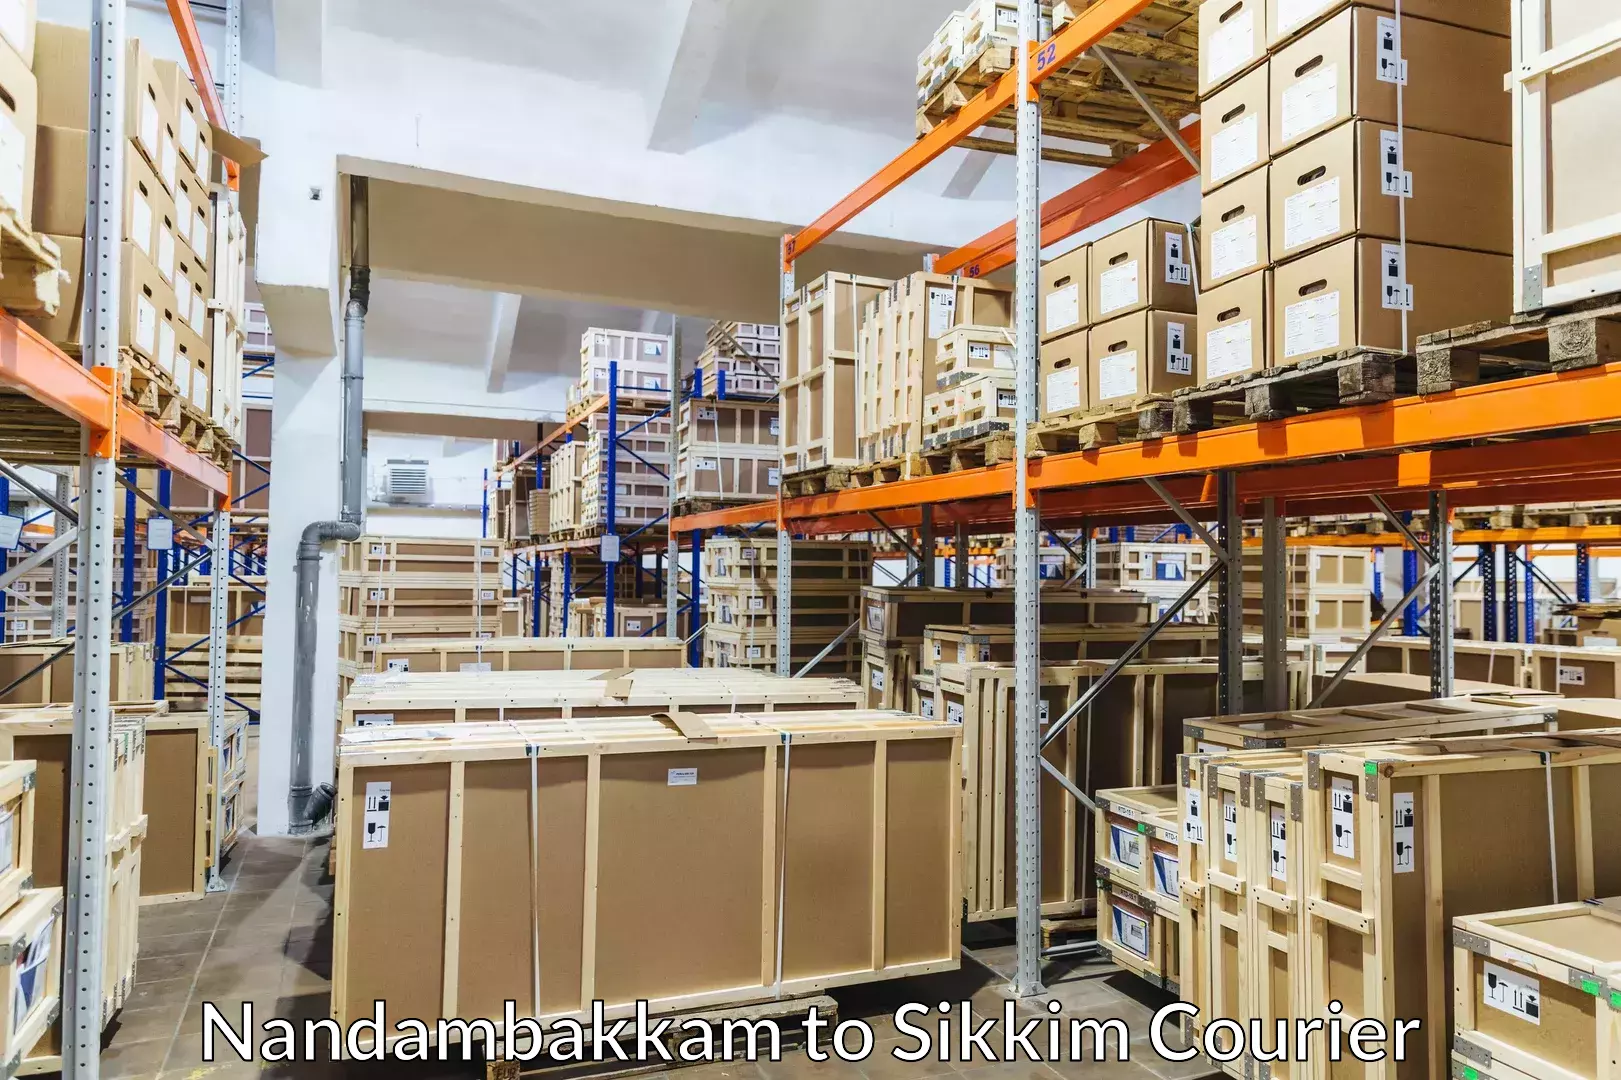 Luggage transport company Nandambakkam to Sikkim